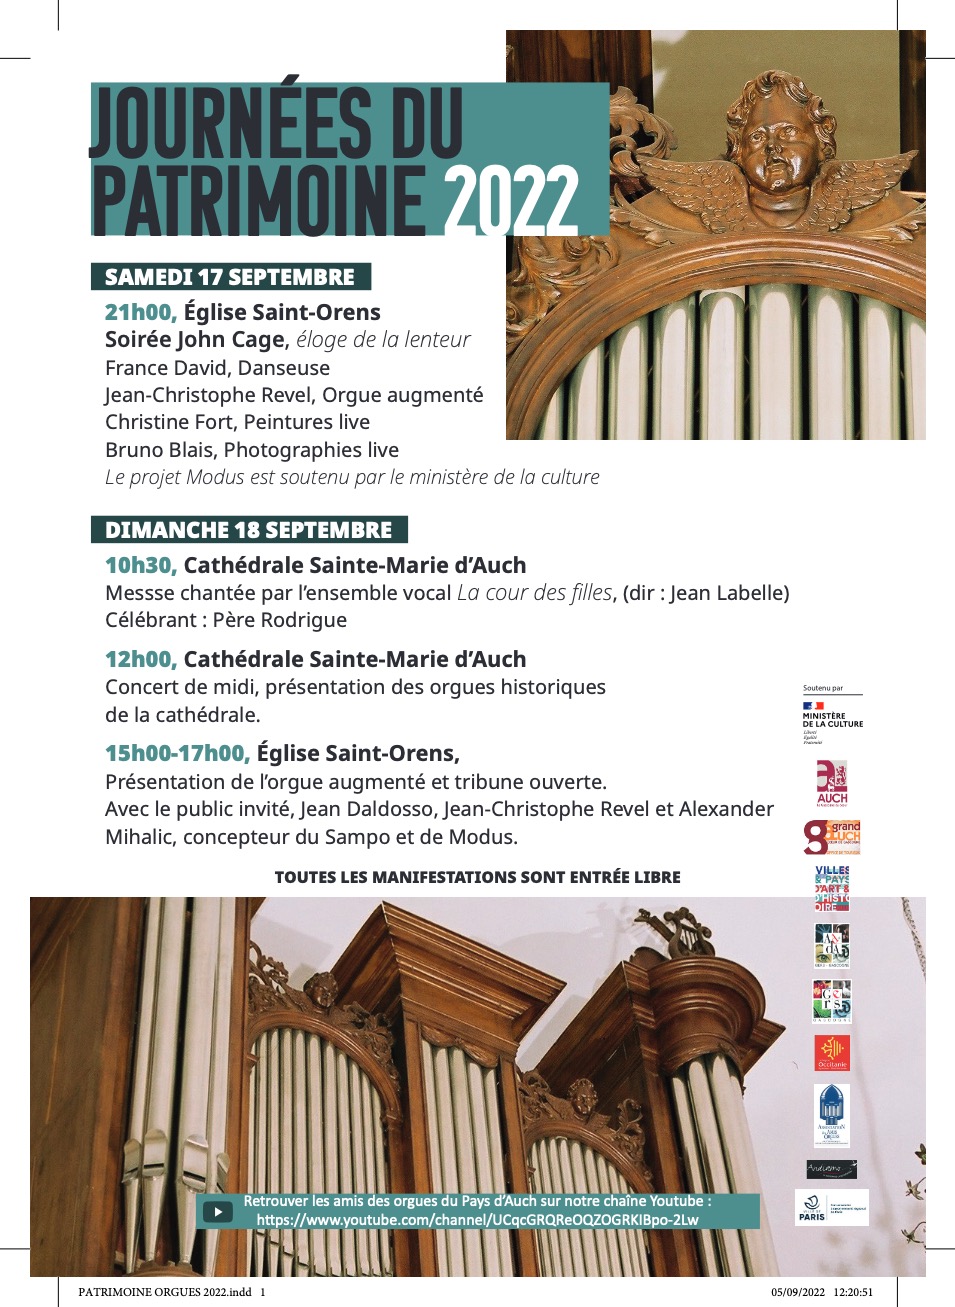 L’orgue de Saint-Orens et la Journée du patrimoine